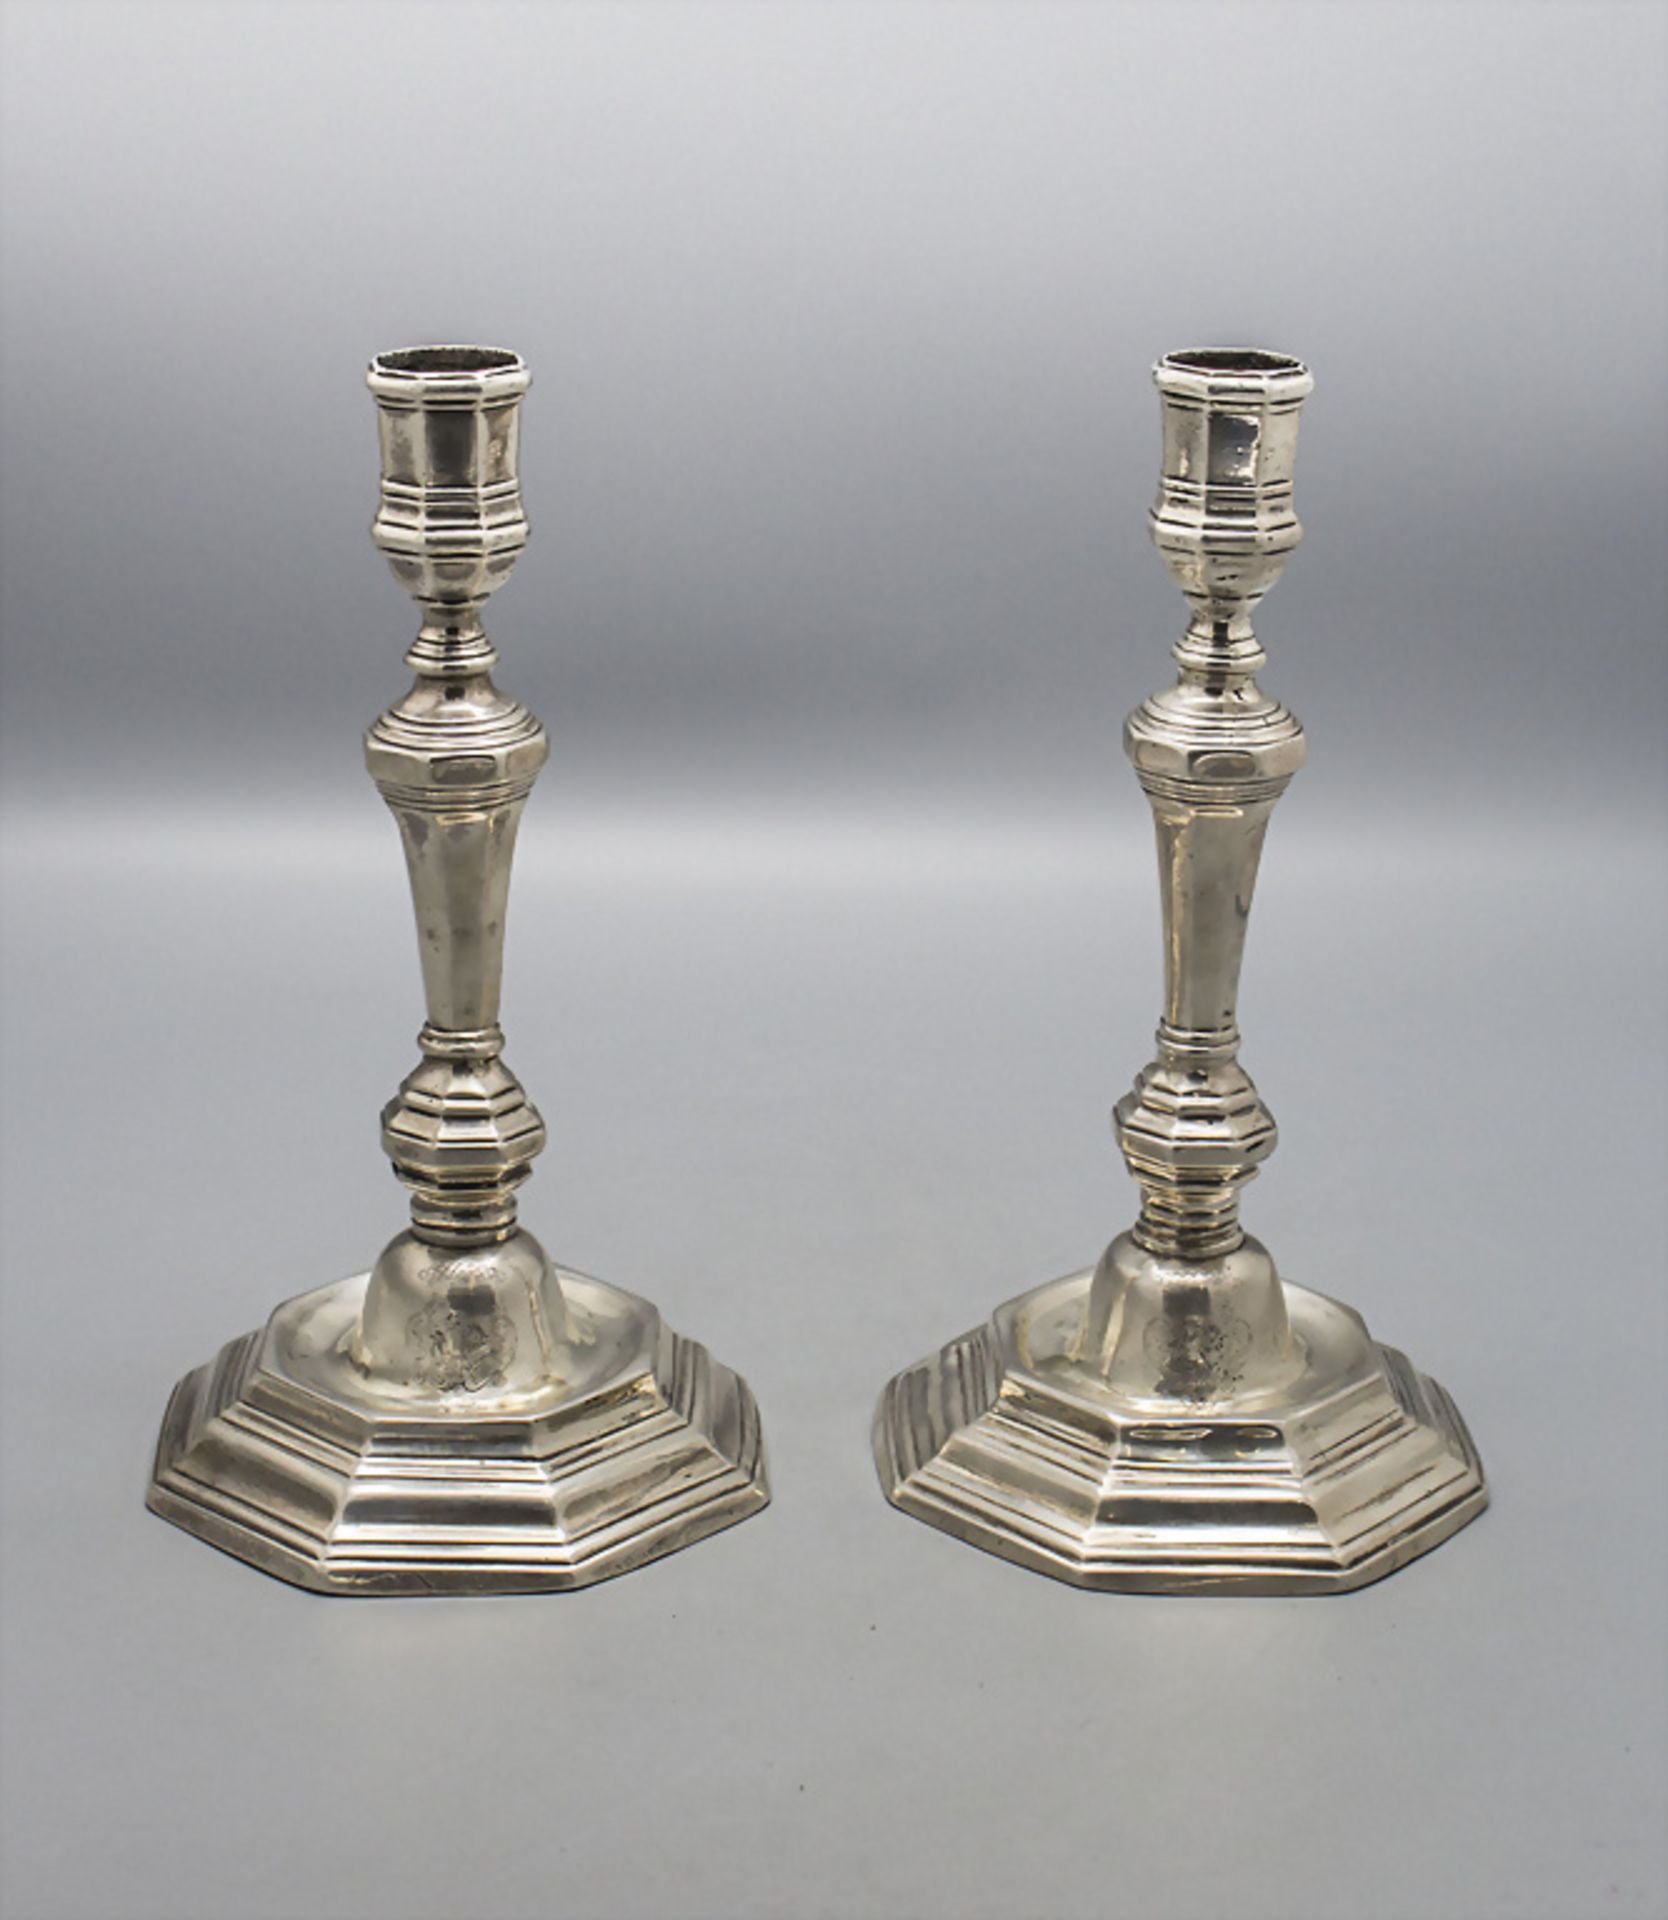 Paar barocke Kerzenleuchter / A pair of Baroque silver candlesticks, I. Navier, Perpignan, um 1735